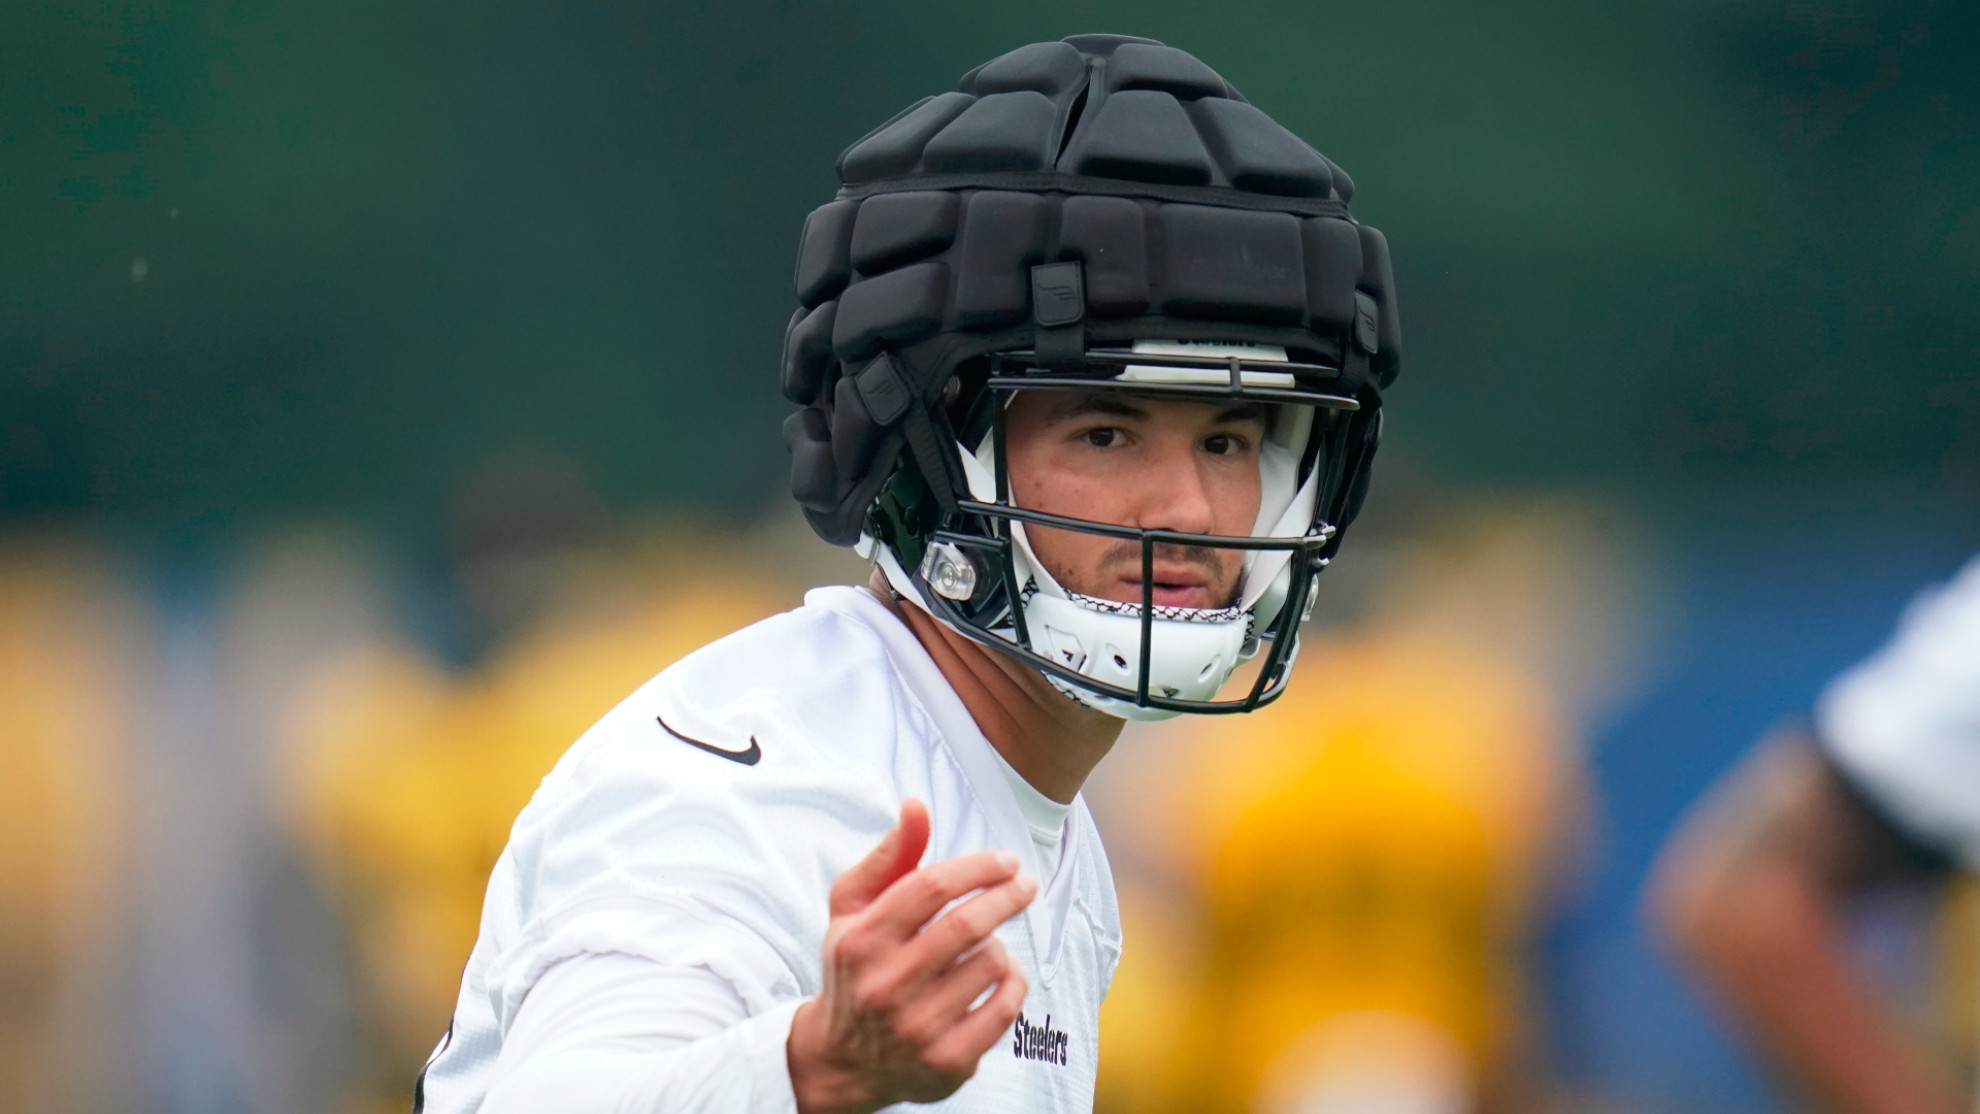 Steelers es de los primeros equipos en usar estos cascos